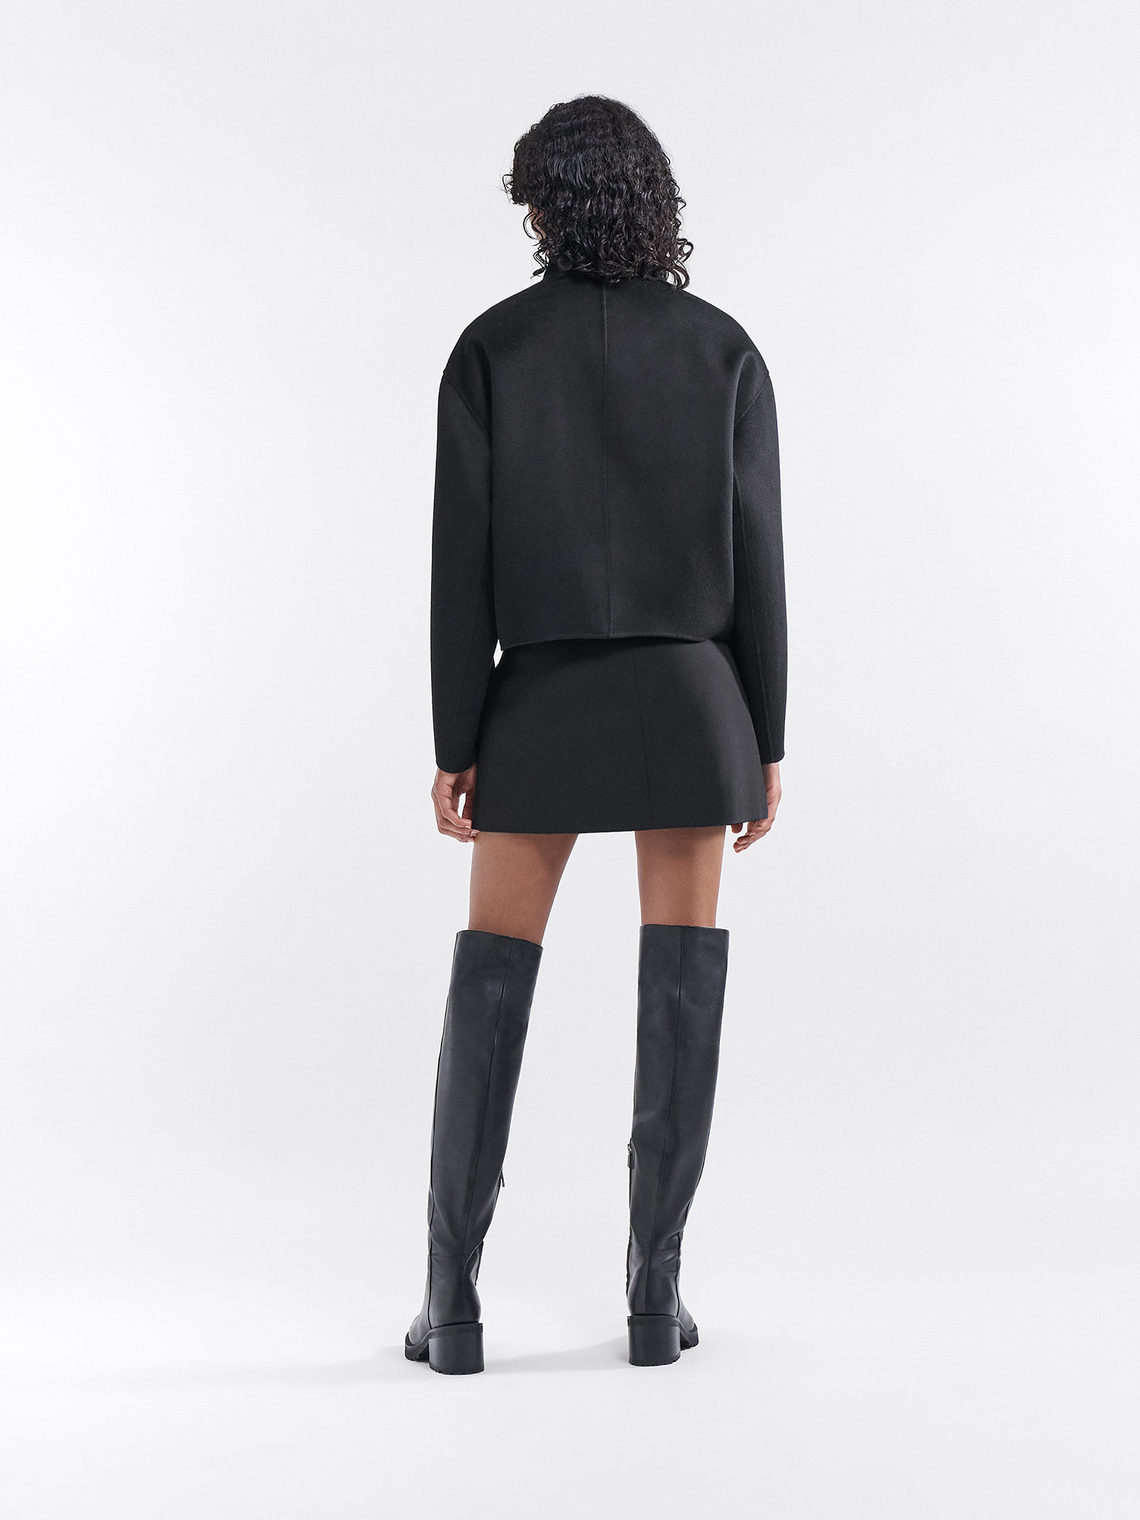 Dafina jacket by Filippa K - black